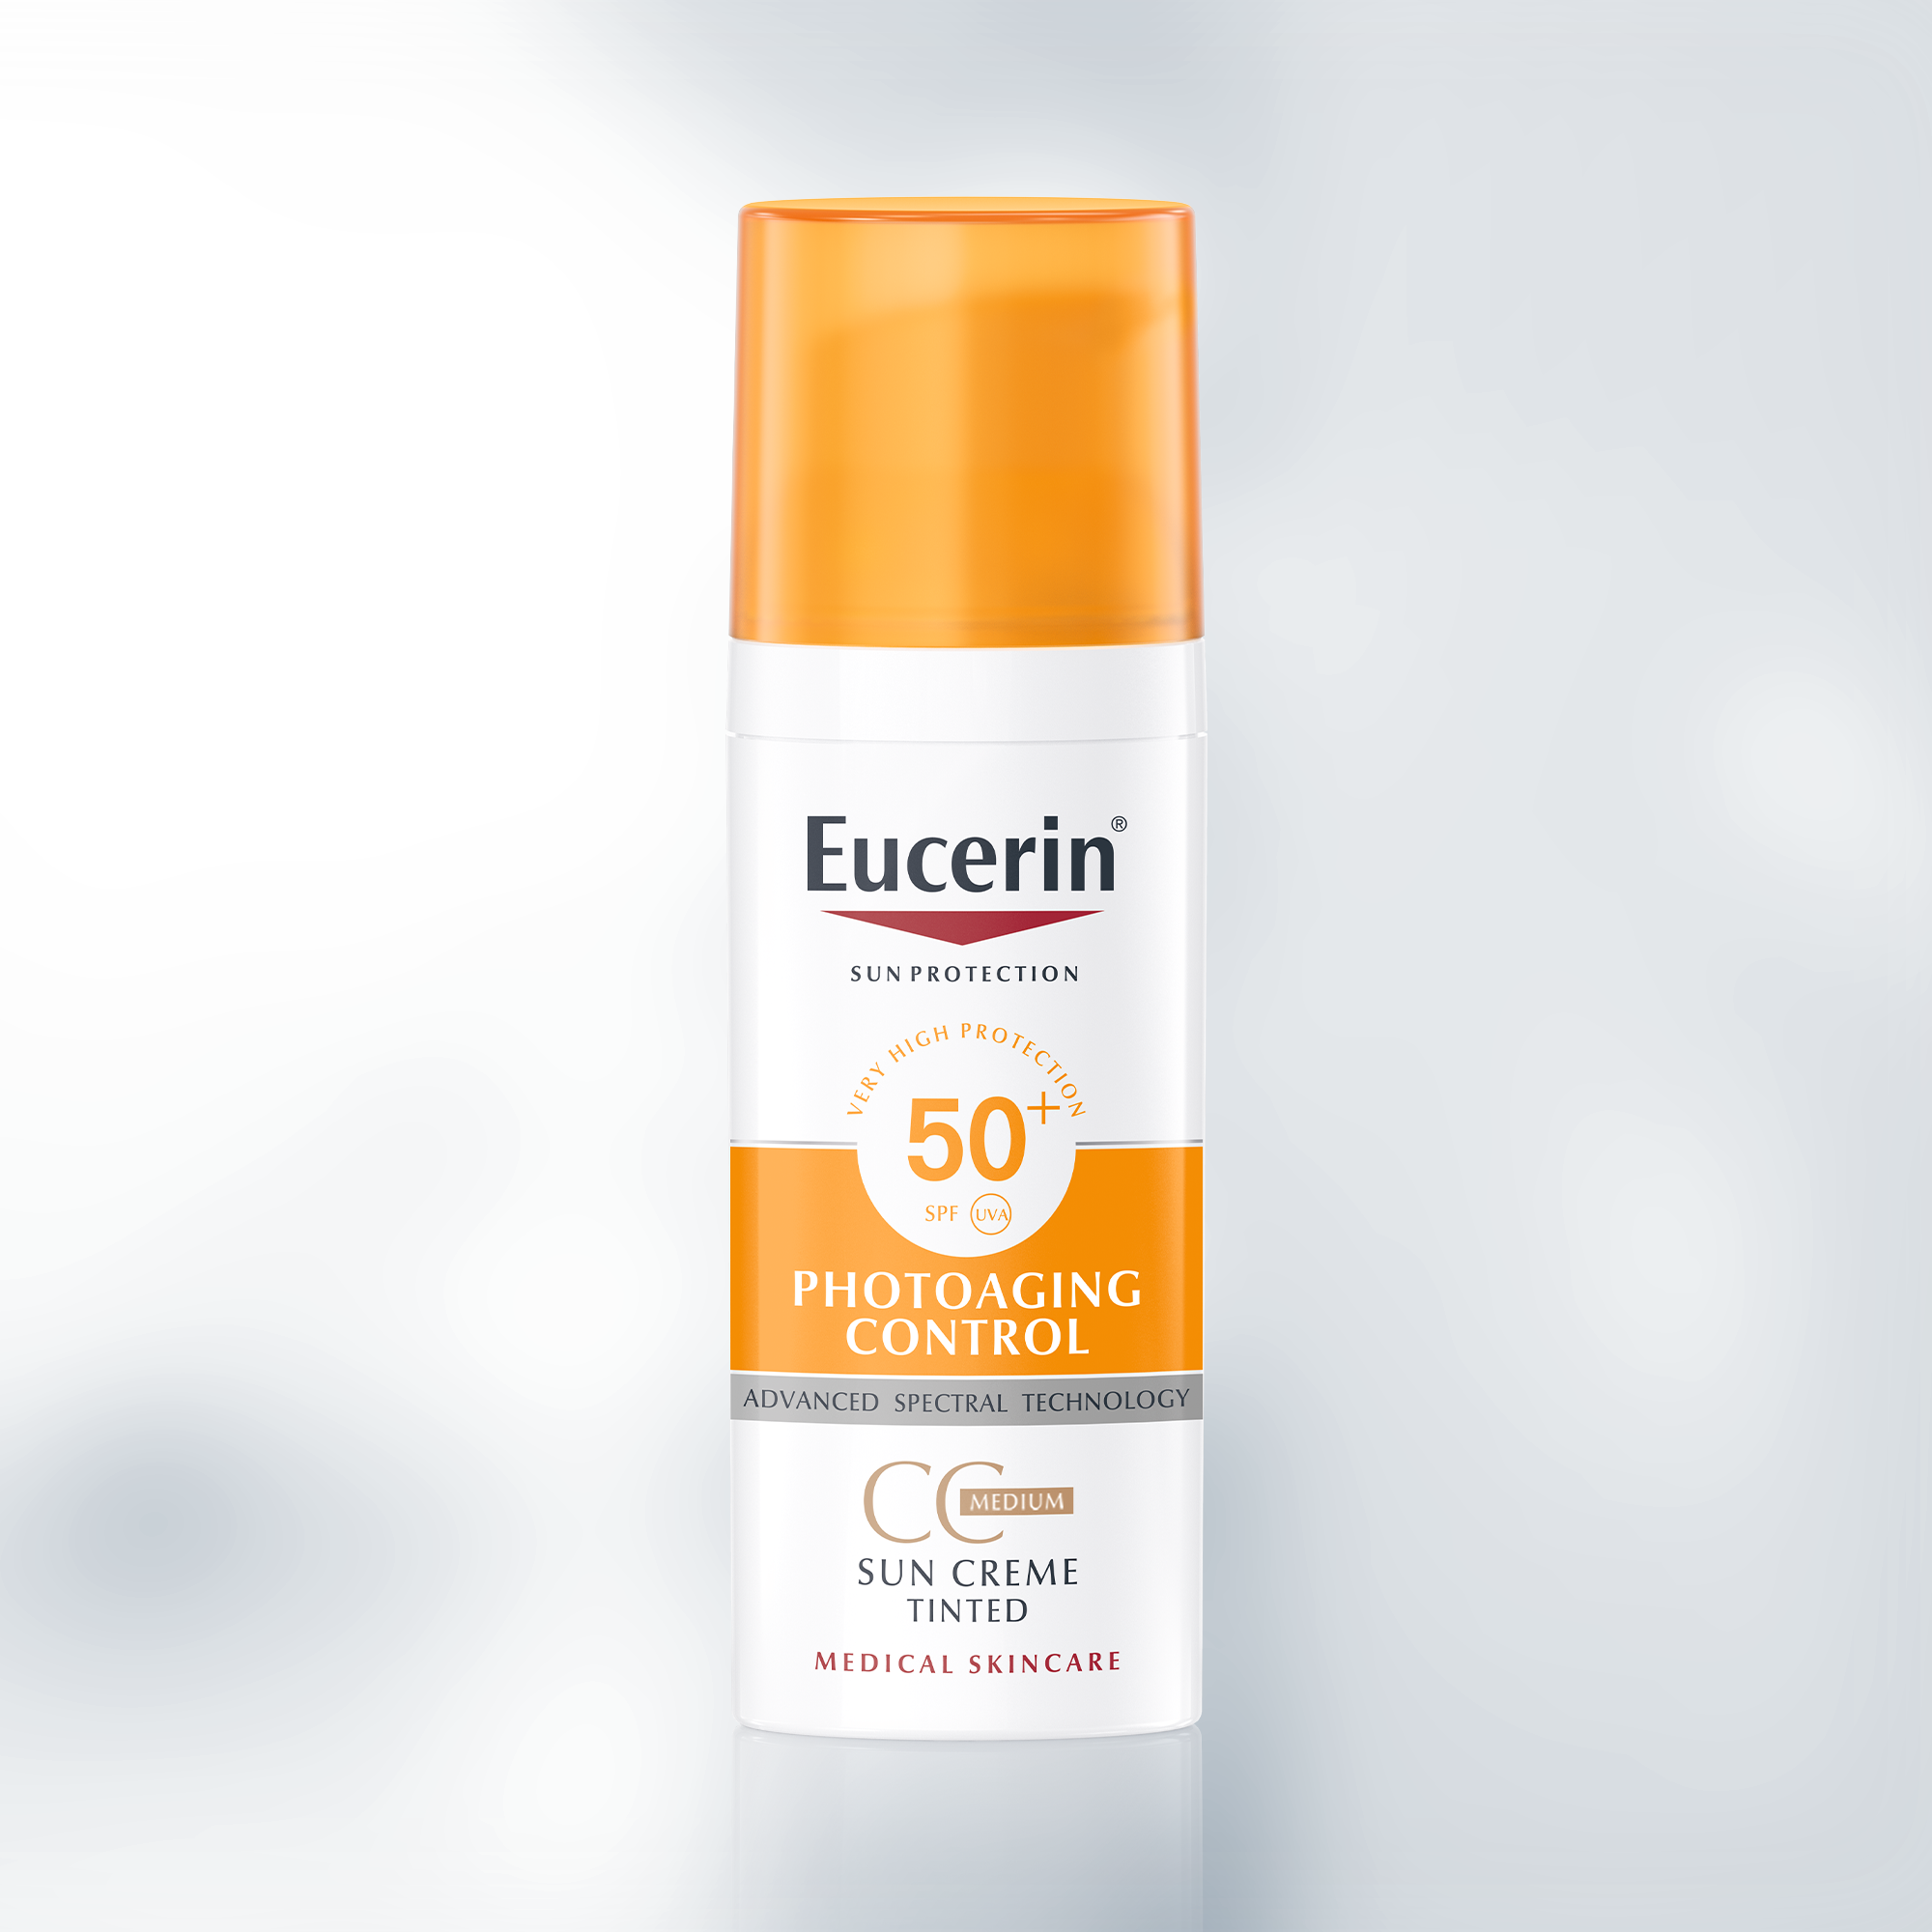 Geslagen vrachtwagen Vulkanisch bladerdeeg Sun Creme Tinted Photoaging Control SPF 50+ Medium | CC Cream with sunscreen  for face | Eucerin